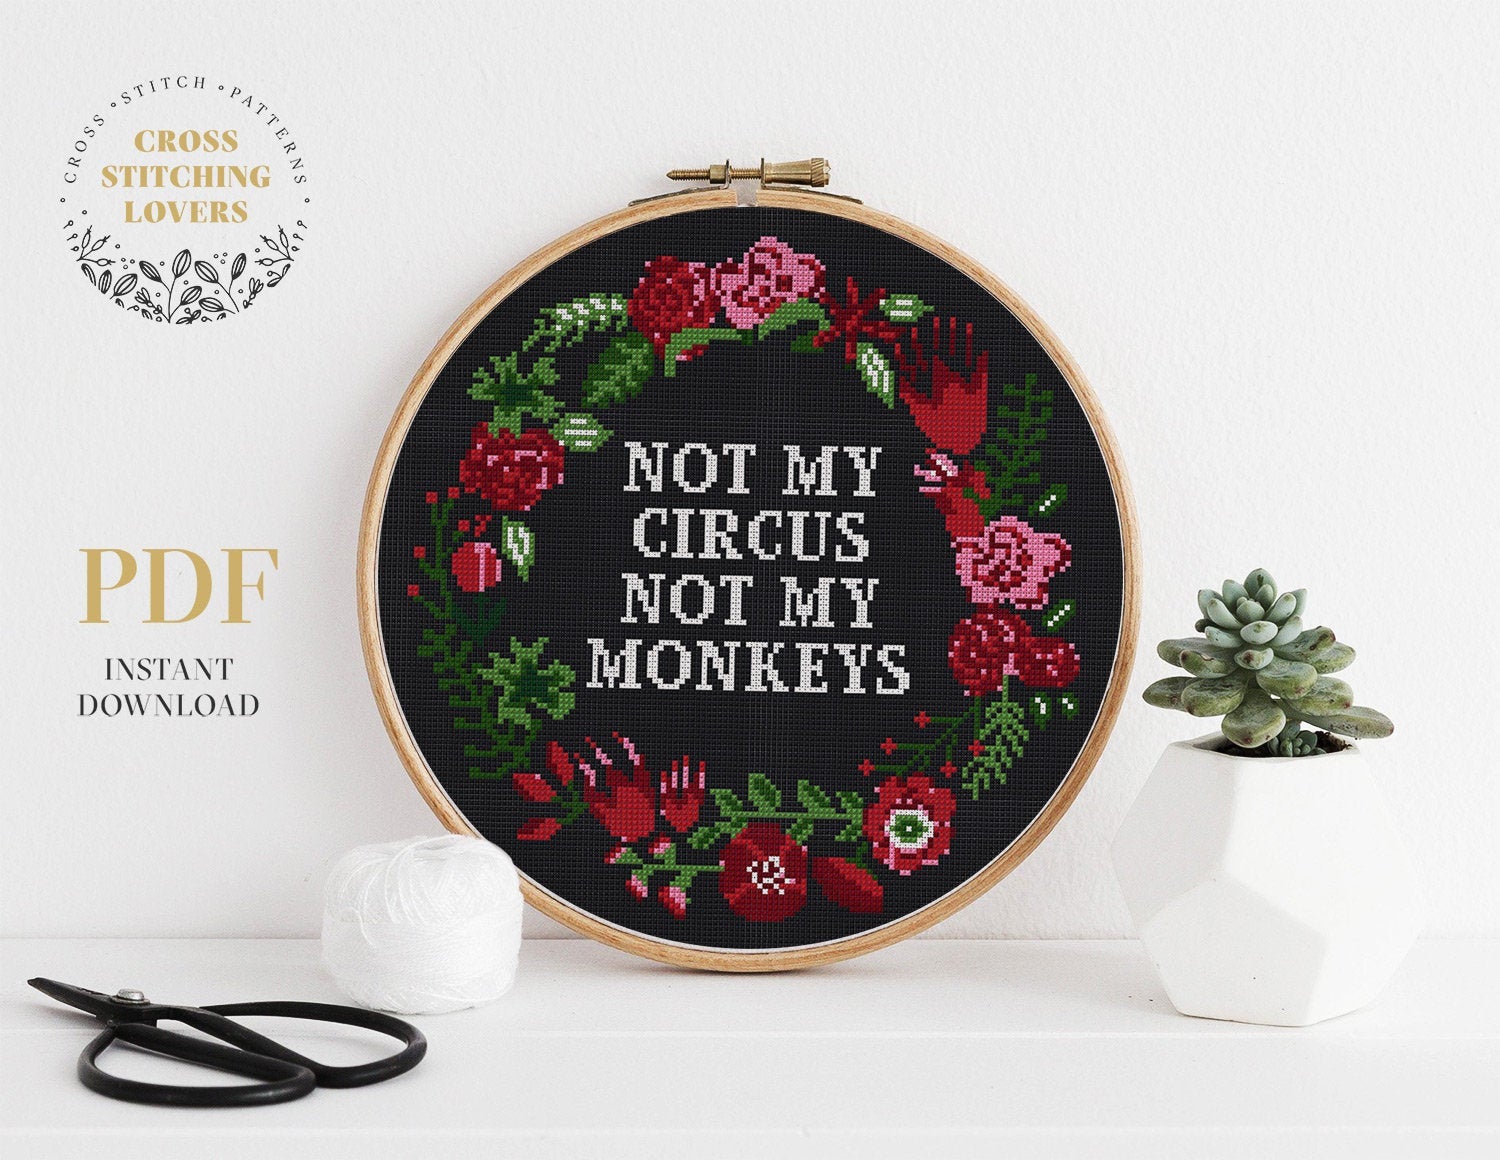 Not My Circus Not My Monkeys - Cross stitch pattern